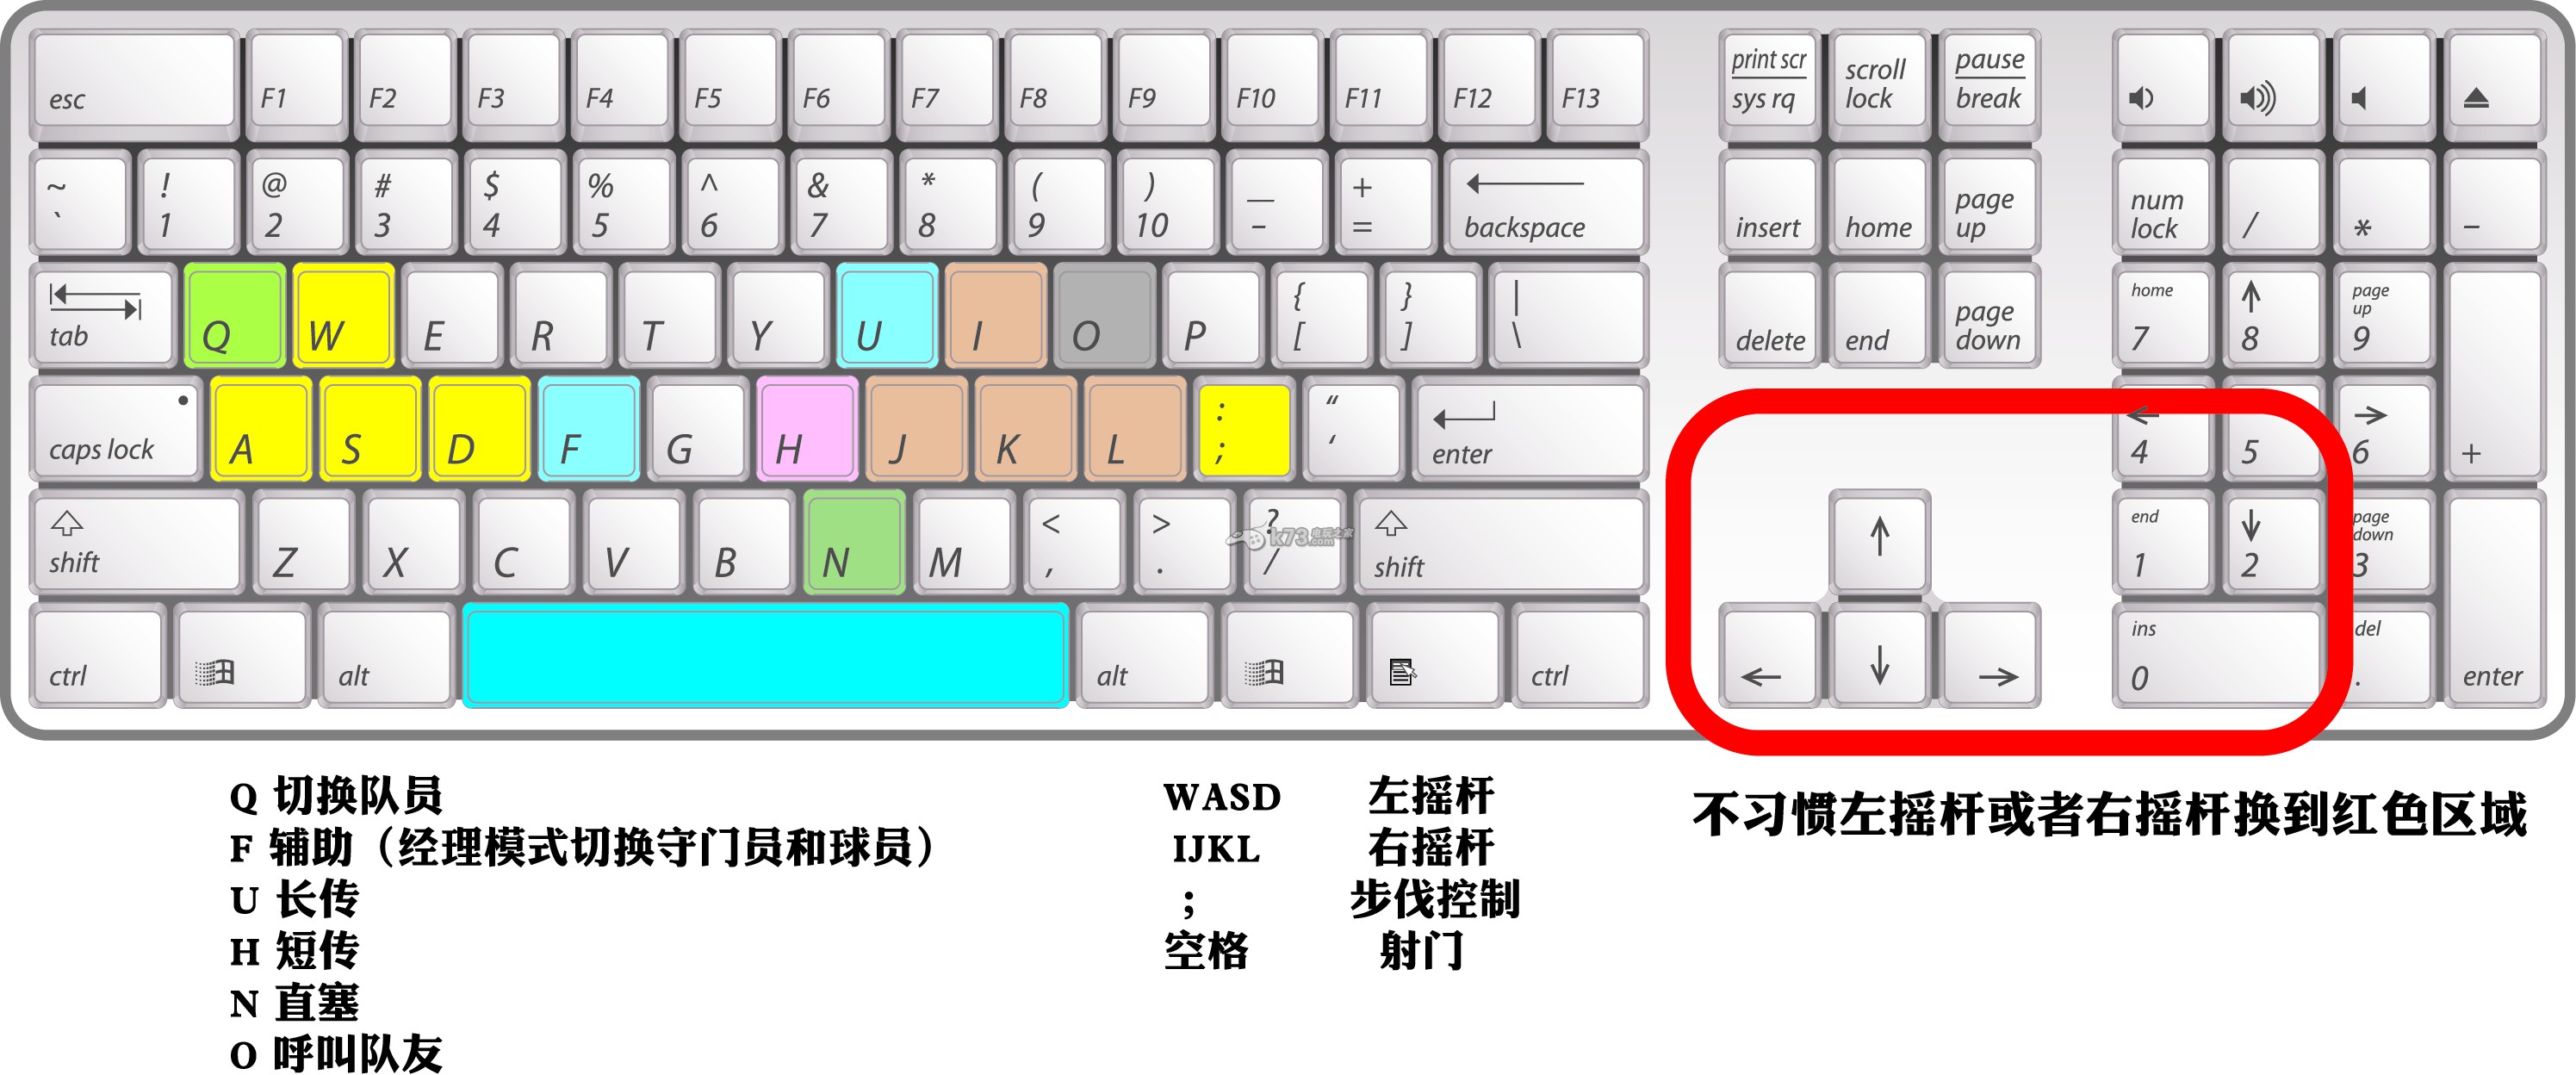 108键盘键位图 108机械键盘键位图_108标准键盘键位高清图